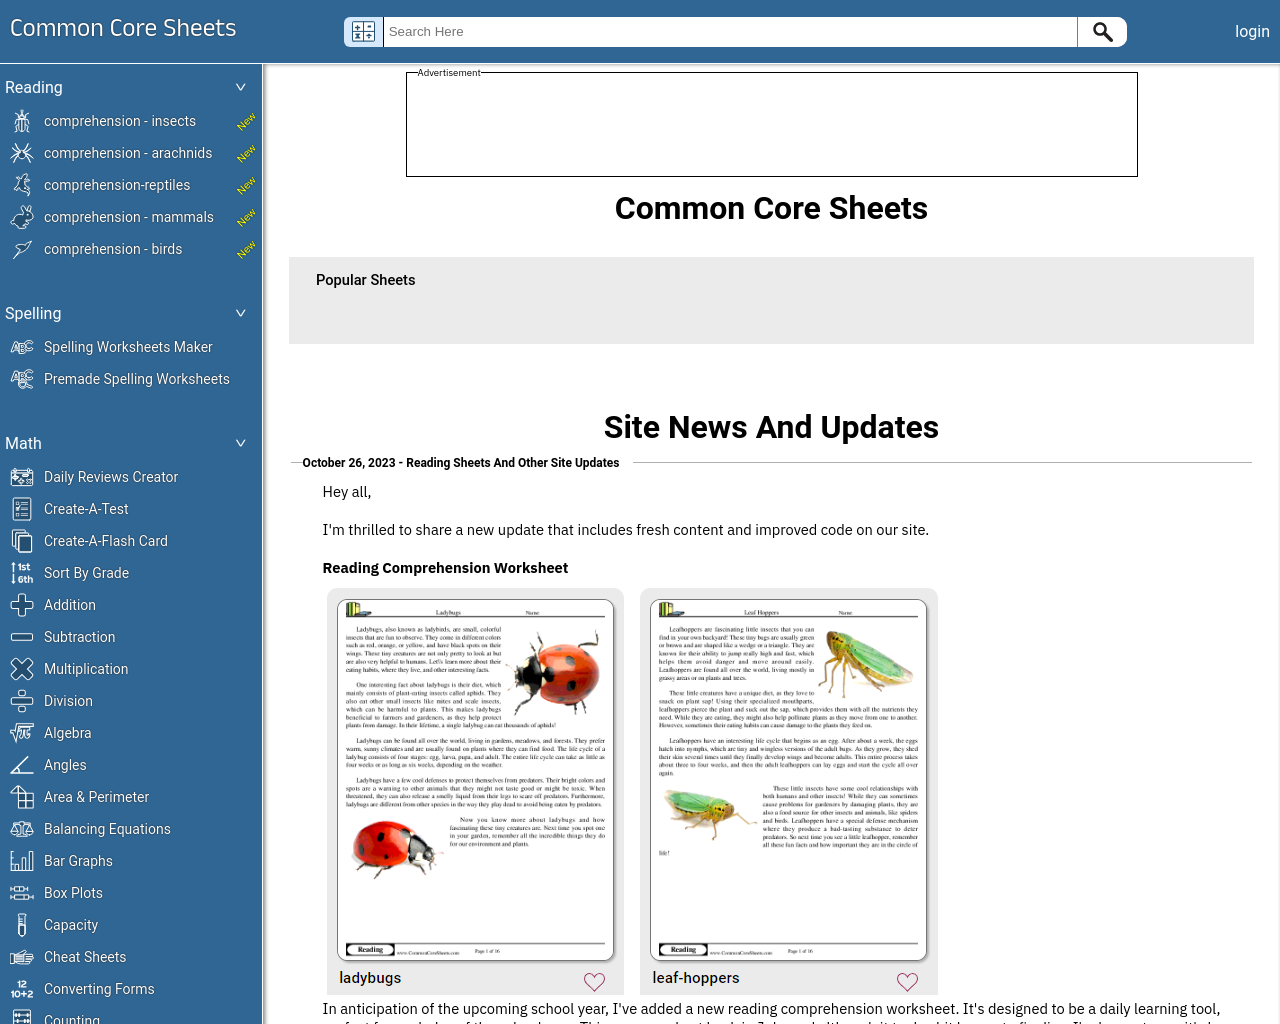 Common Core Sheets